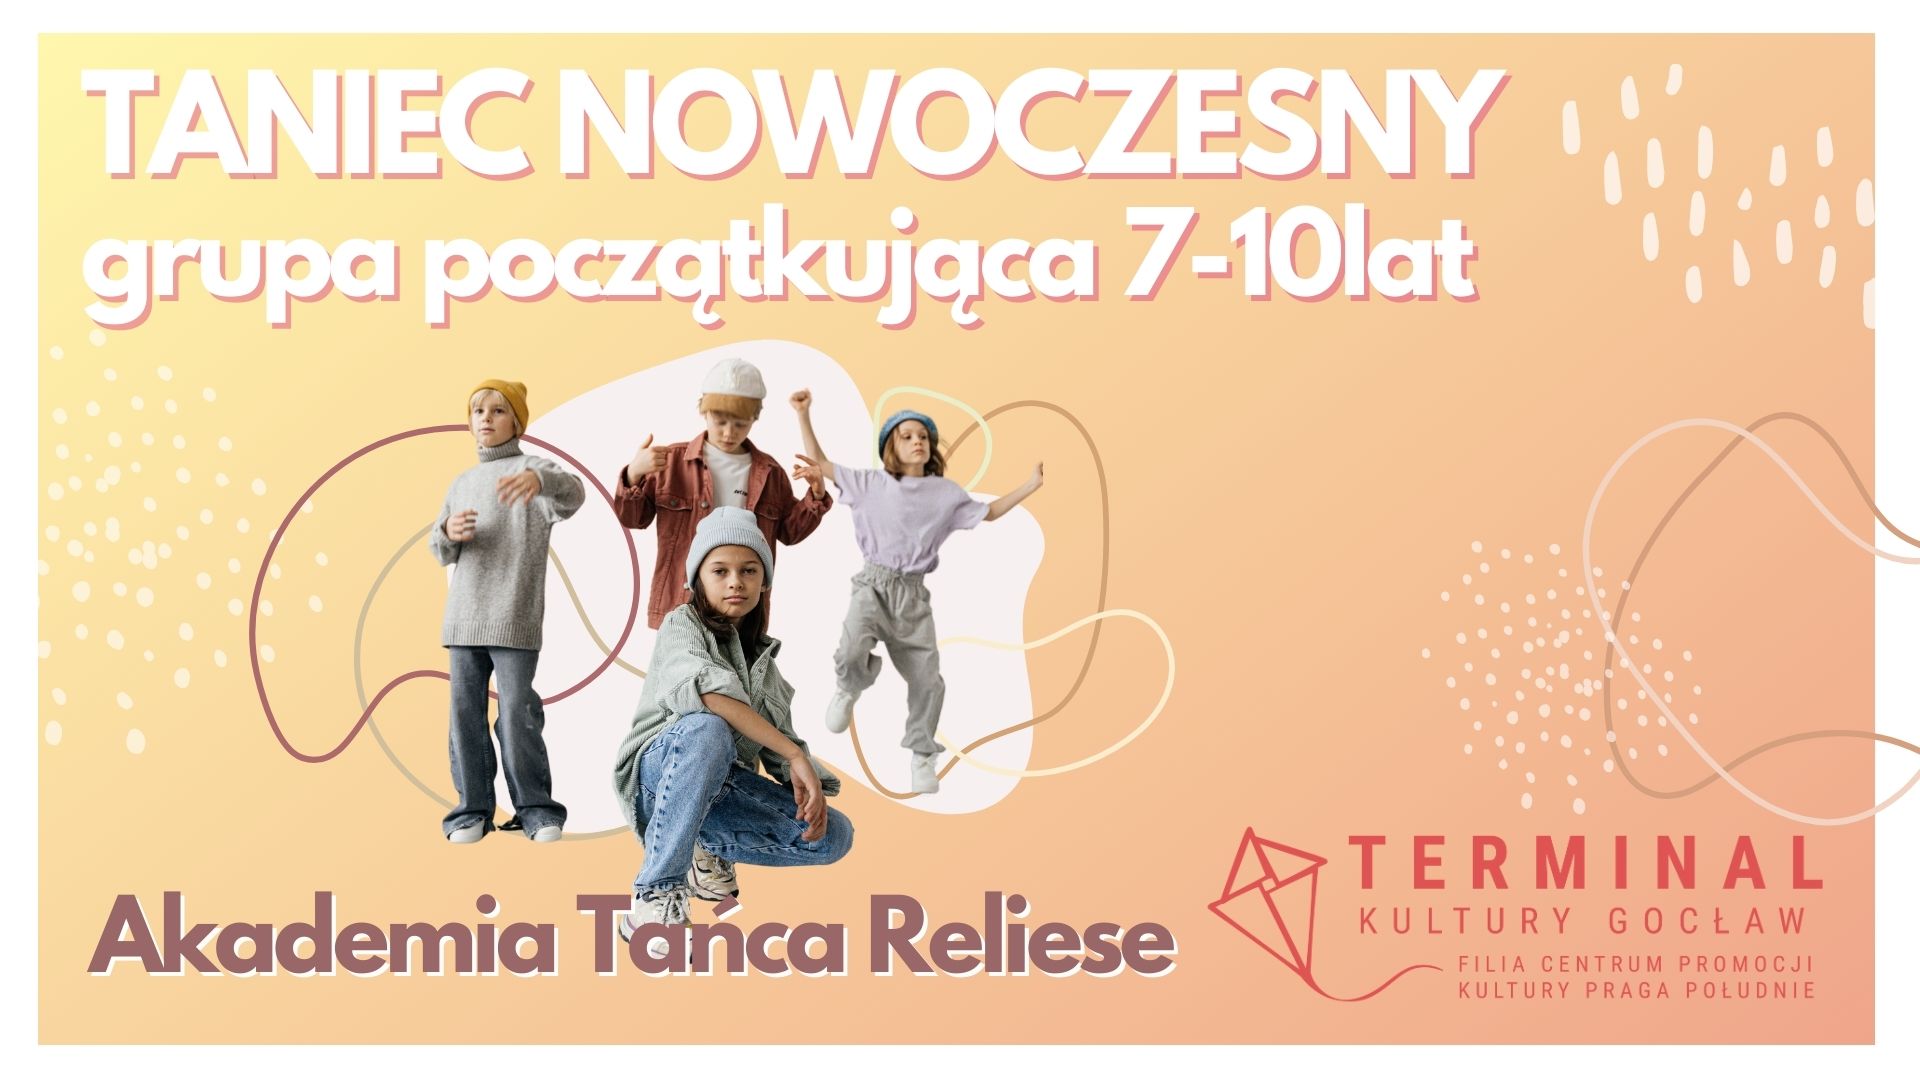 Taniec Nowoczesny (7-10 lat)  Akademia Tańca Reliese